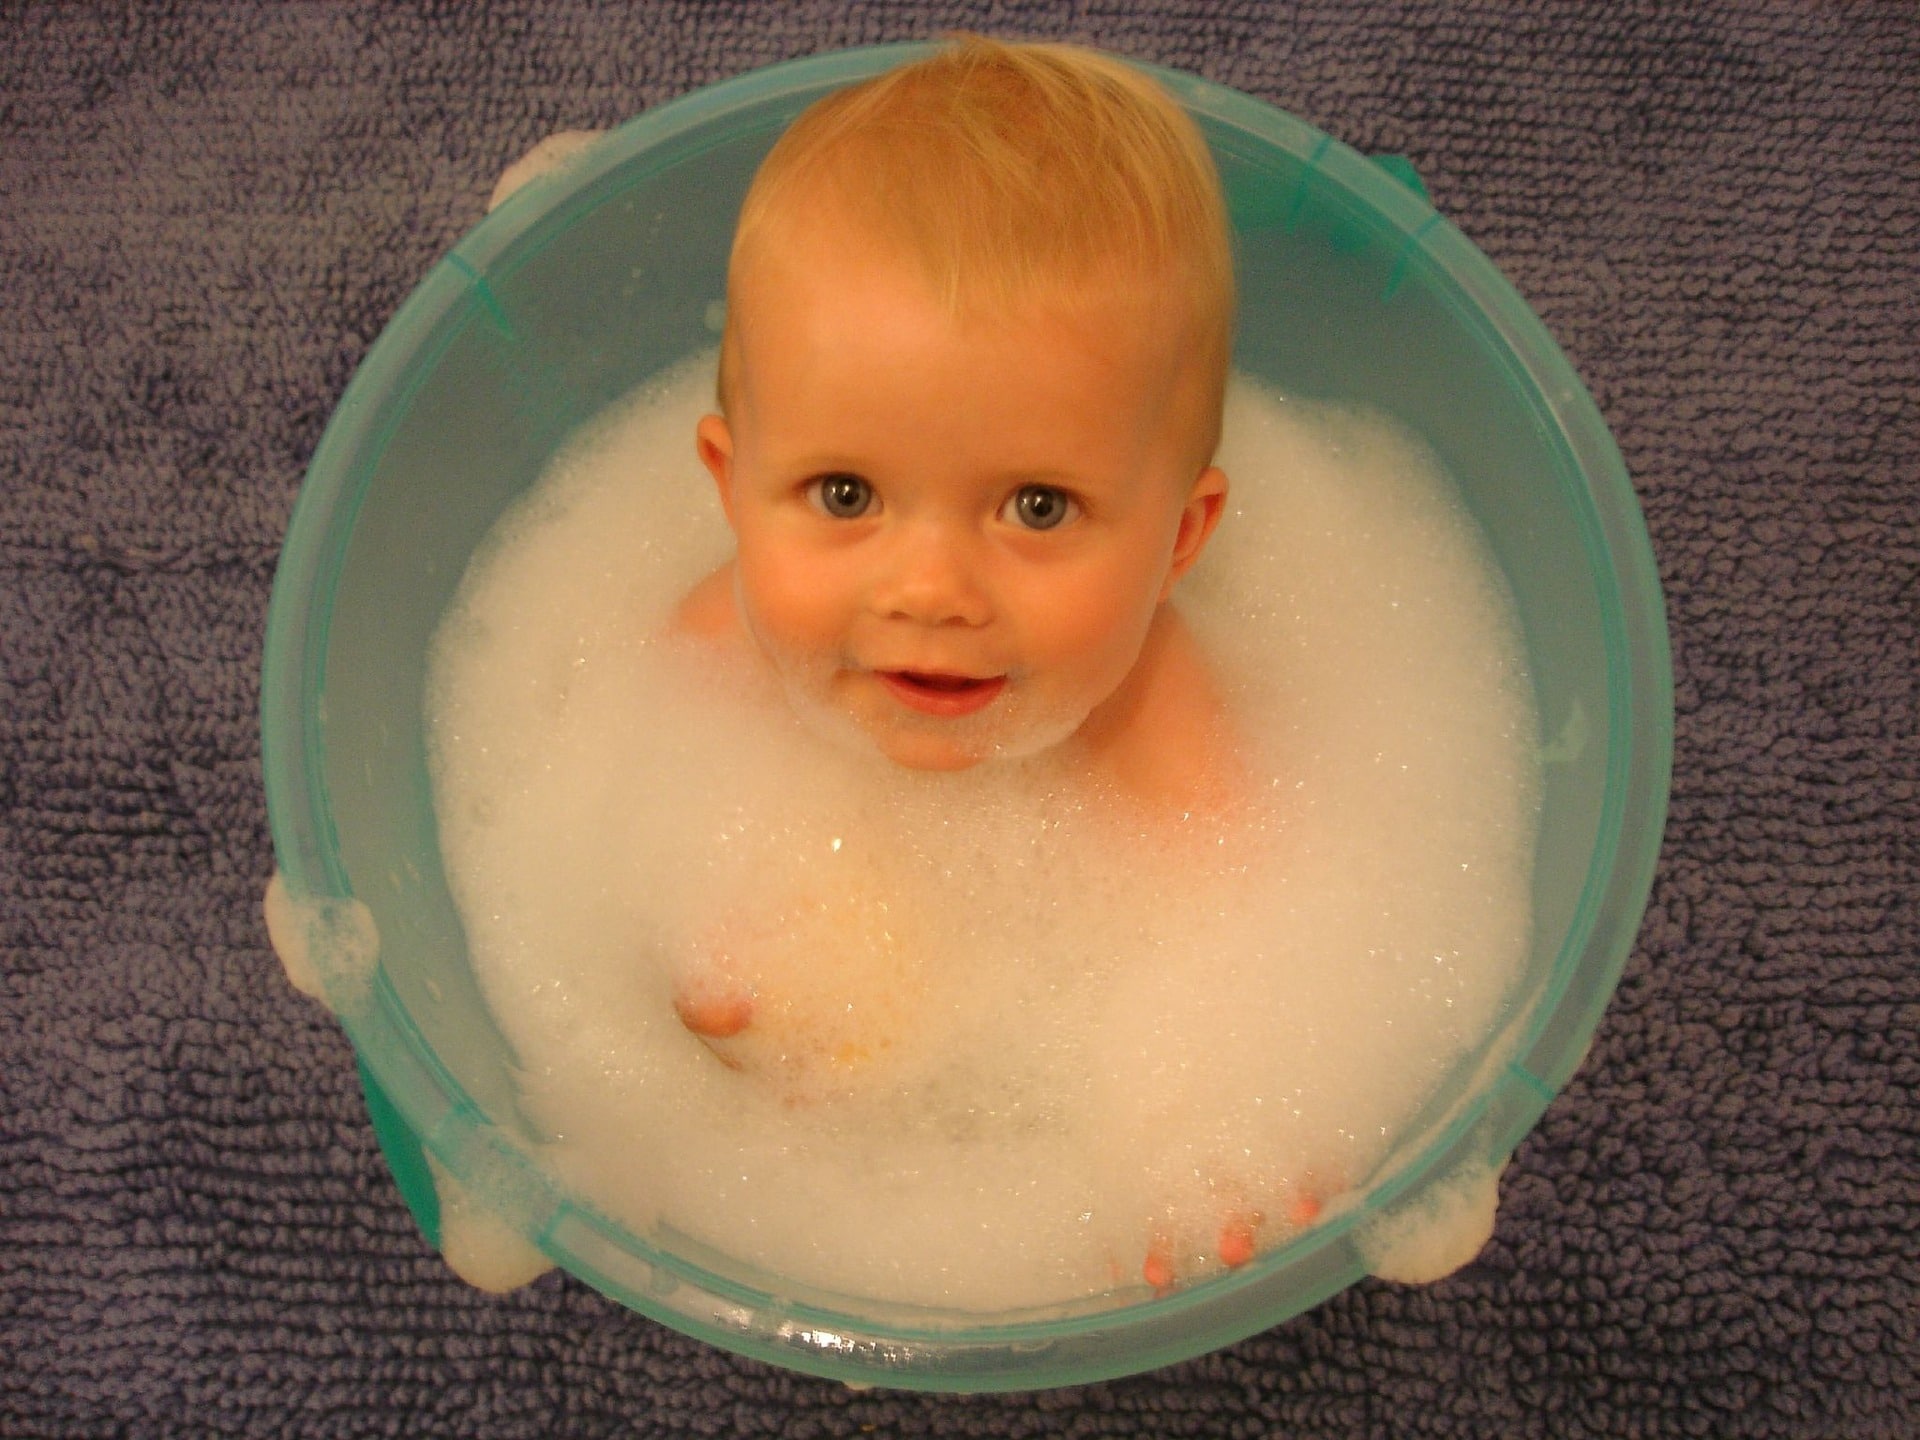 best bubble bath for kids